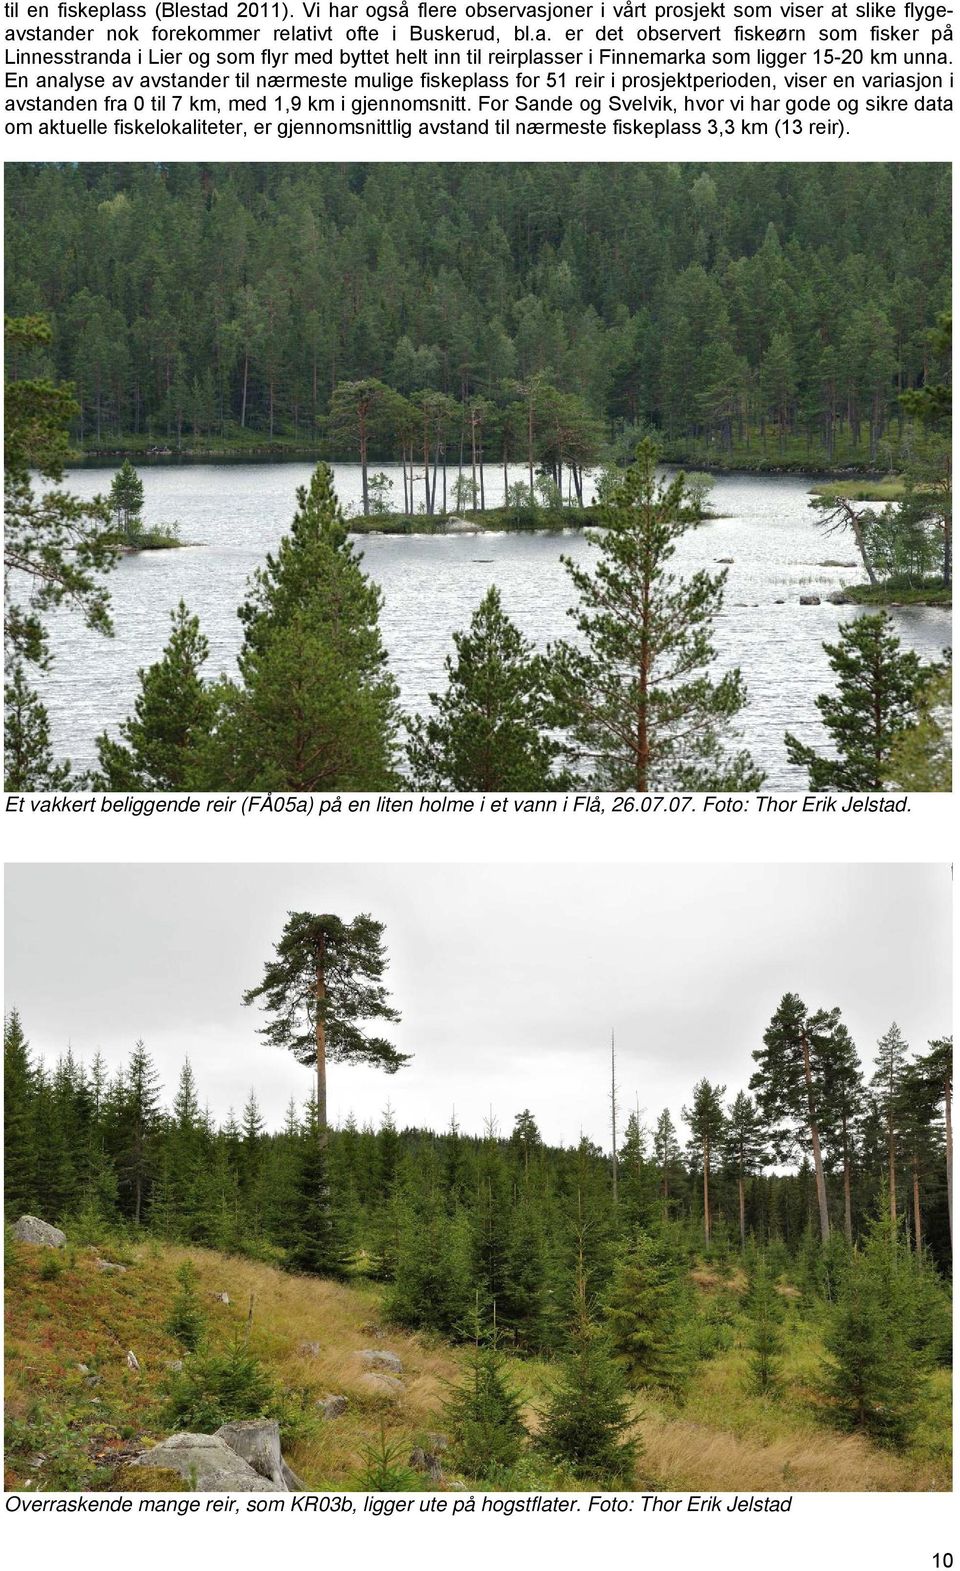 For Sande og Svelvik, hvor vi har gode og sikre data om aktuelle fiskelokaliteter, er gjennomsnittlig avstand til nærmeste fiskeplass 3,3 km (13 reir).